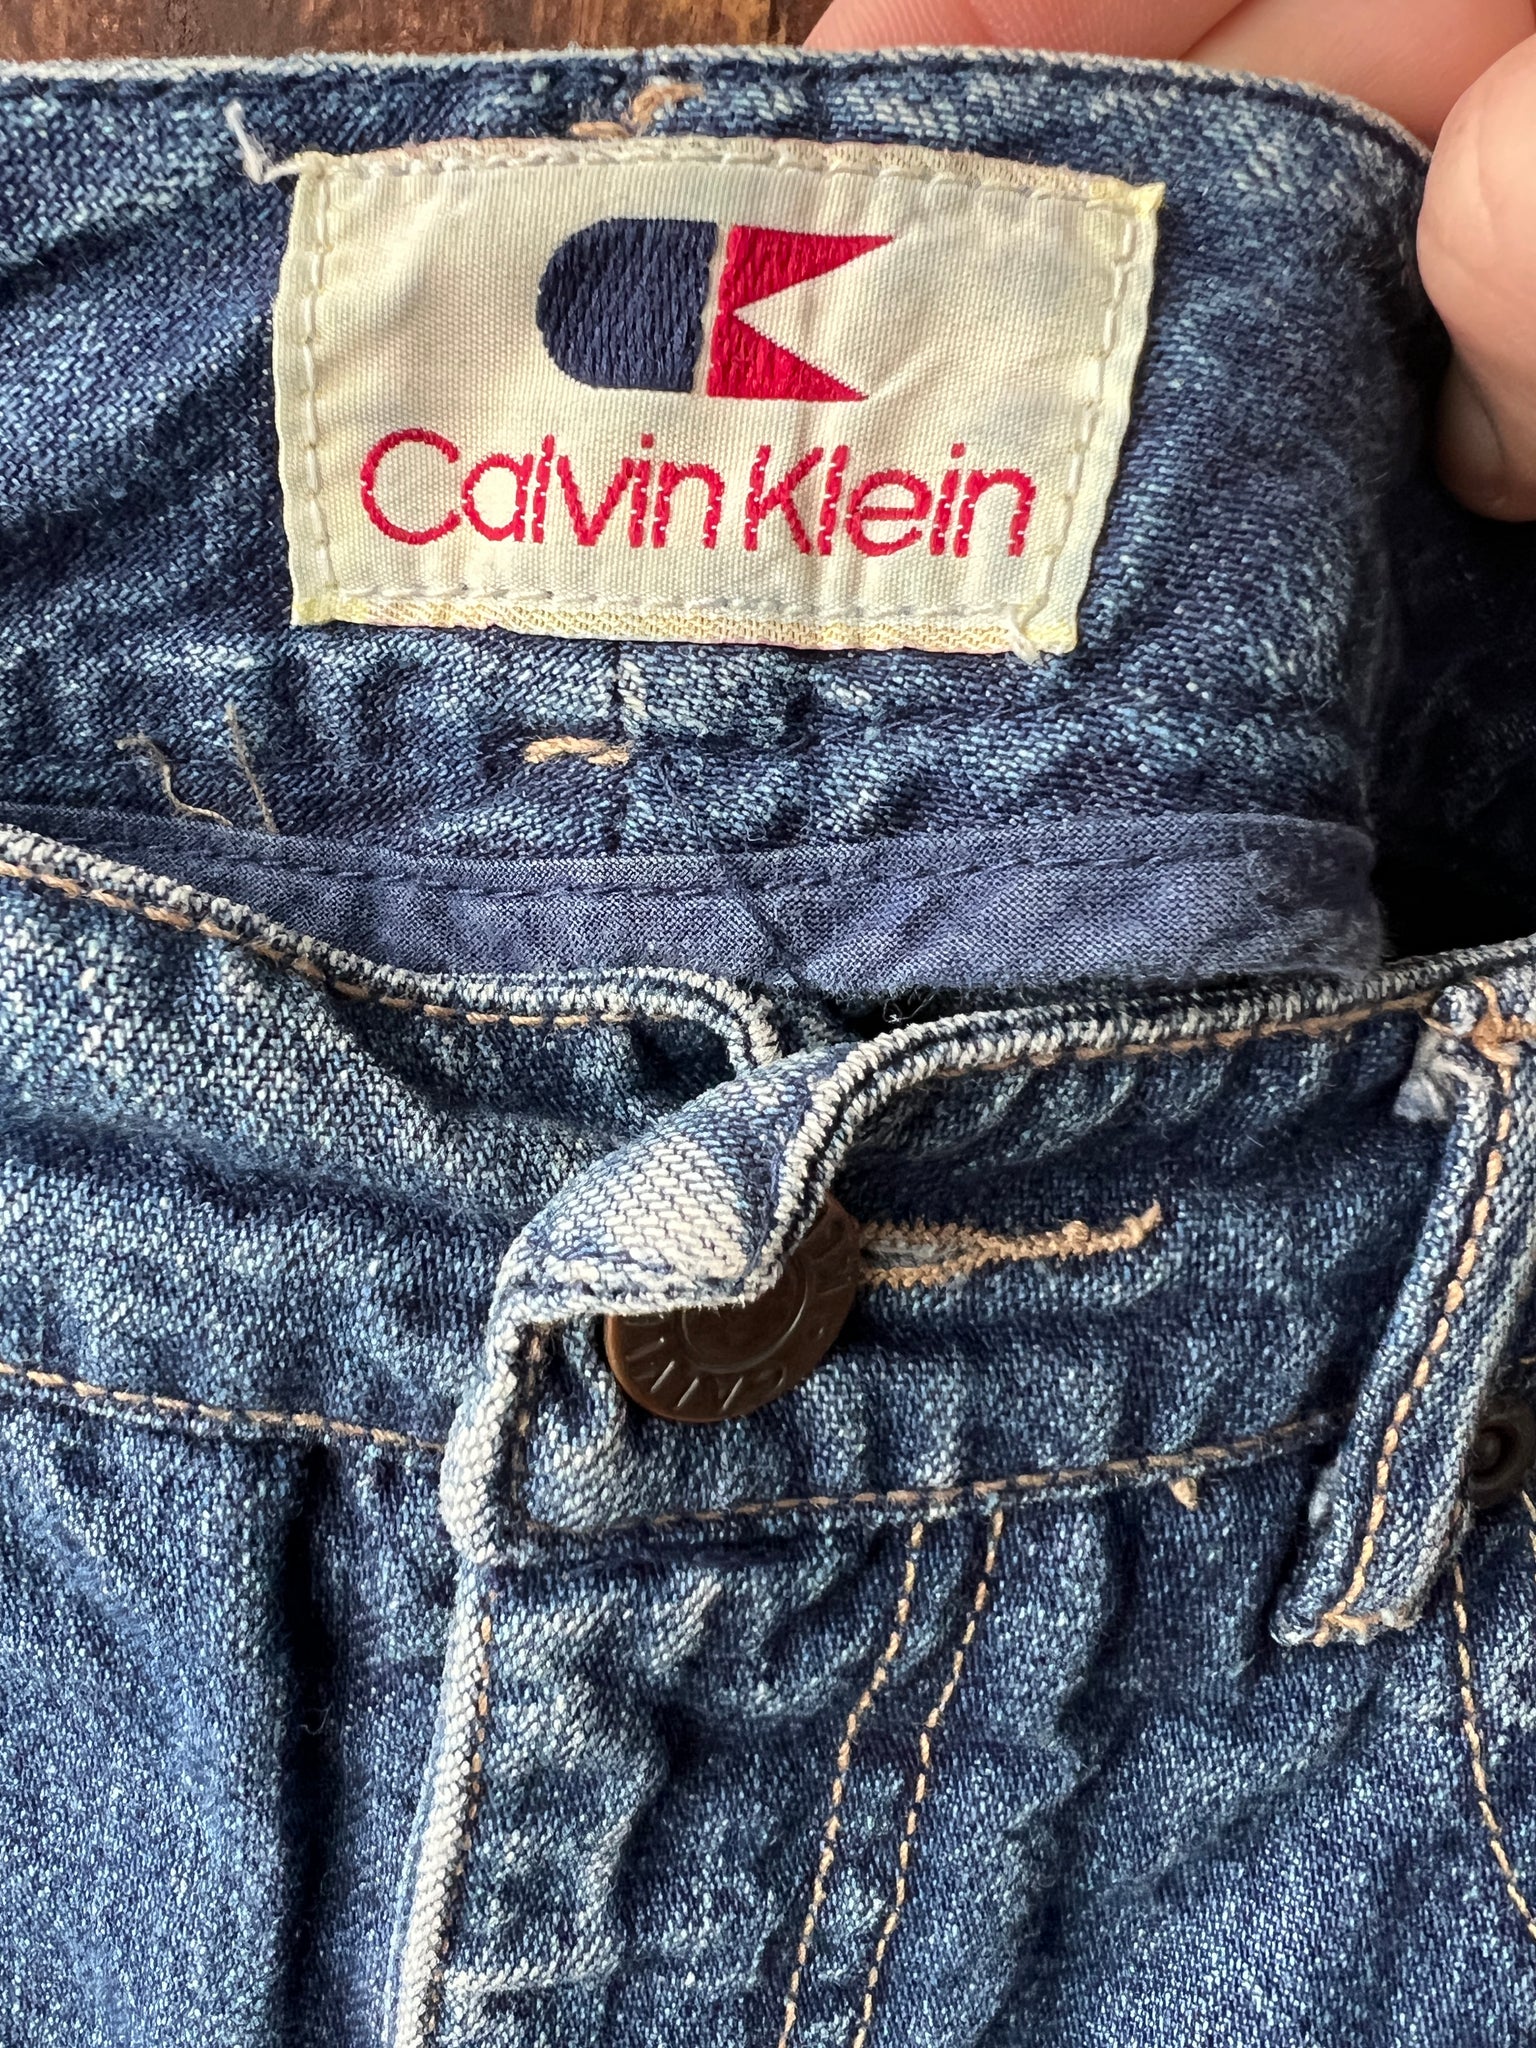 1980s SKIRT- Calvin Klein denim straight skirt